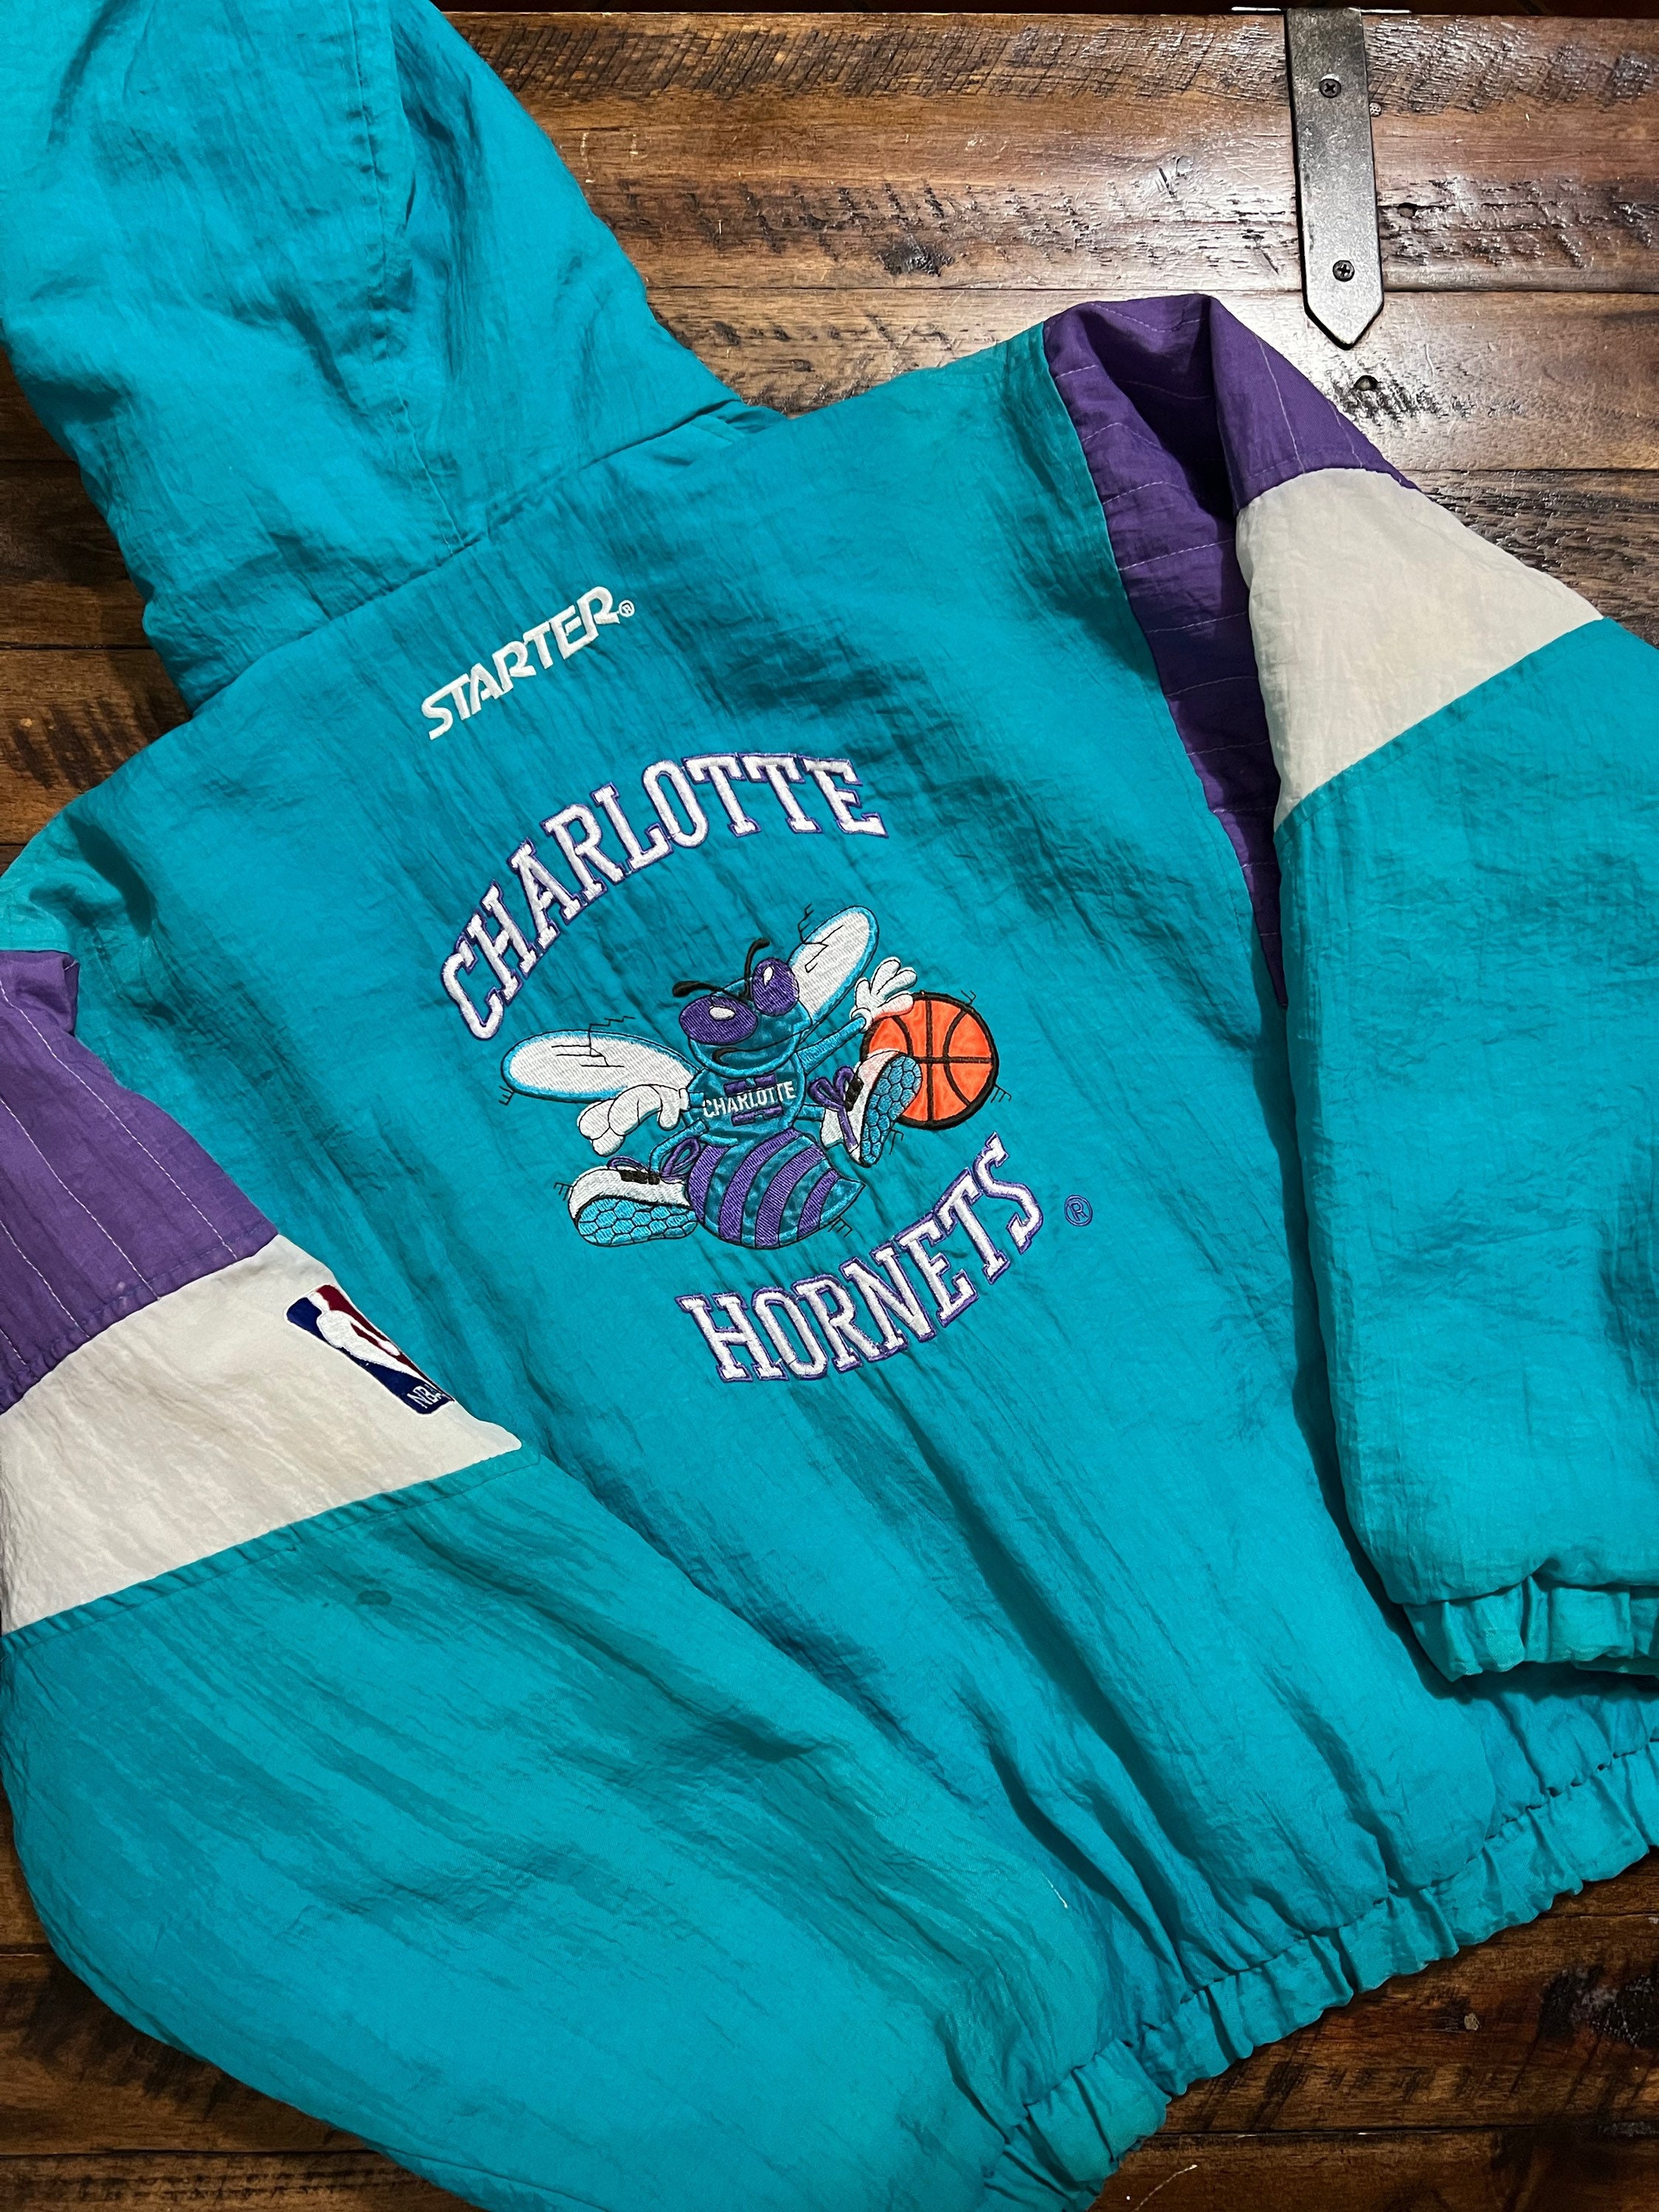 Vintage 90's Starter NBA Charlotte Hornets Embroidered Crewneck